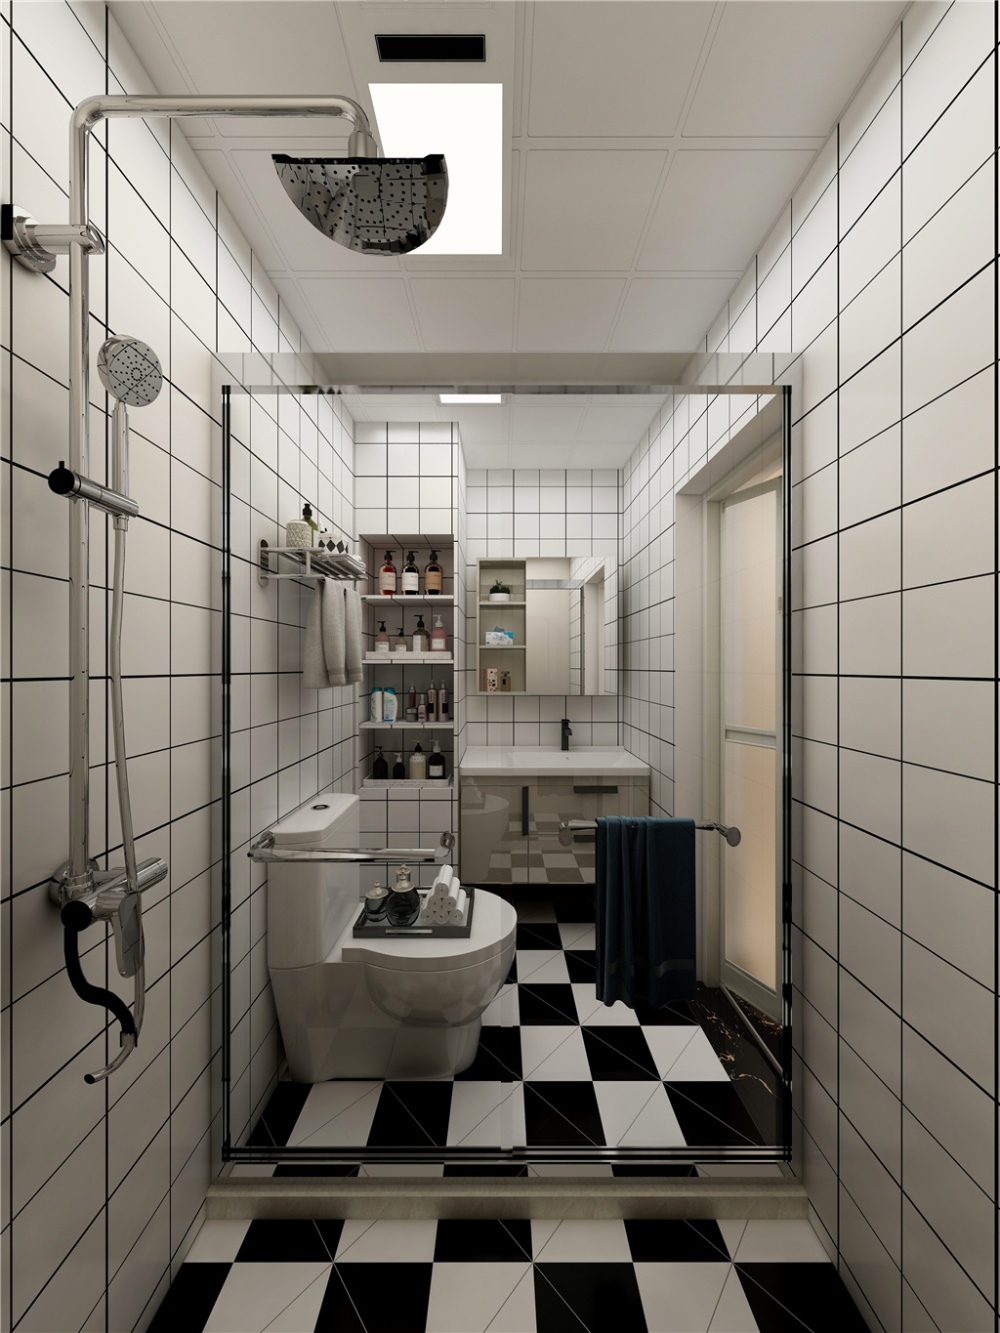 浦东康沈路100现代简约三室一厅卫生间装修效果图